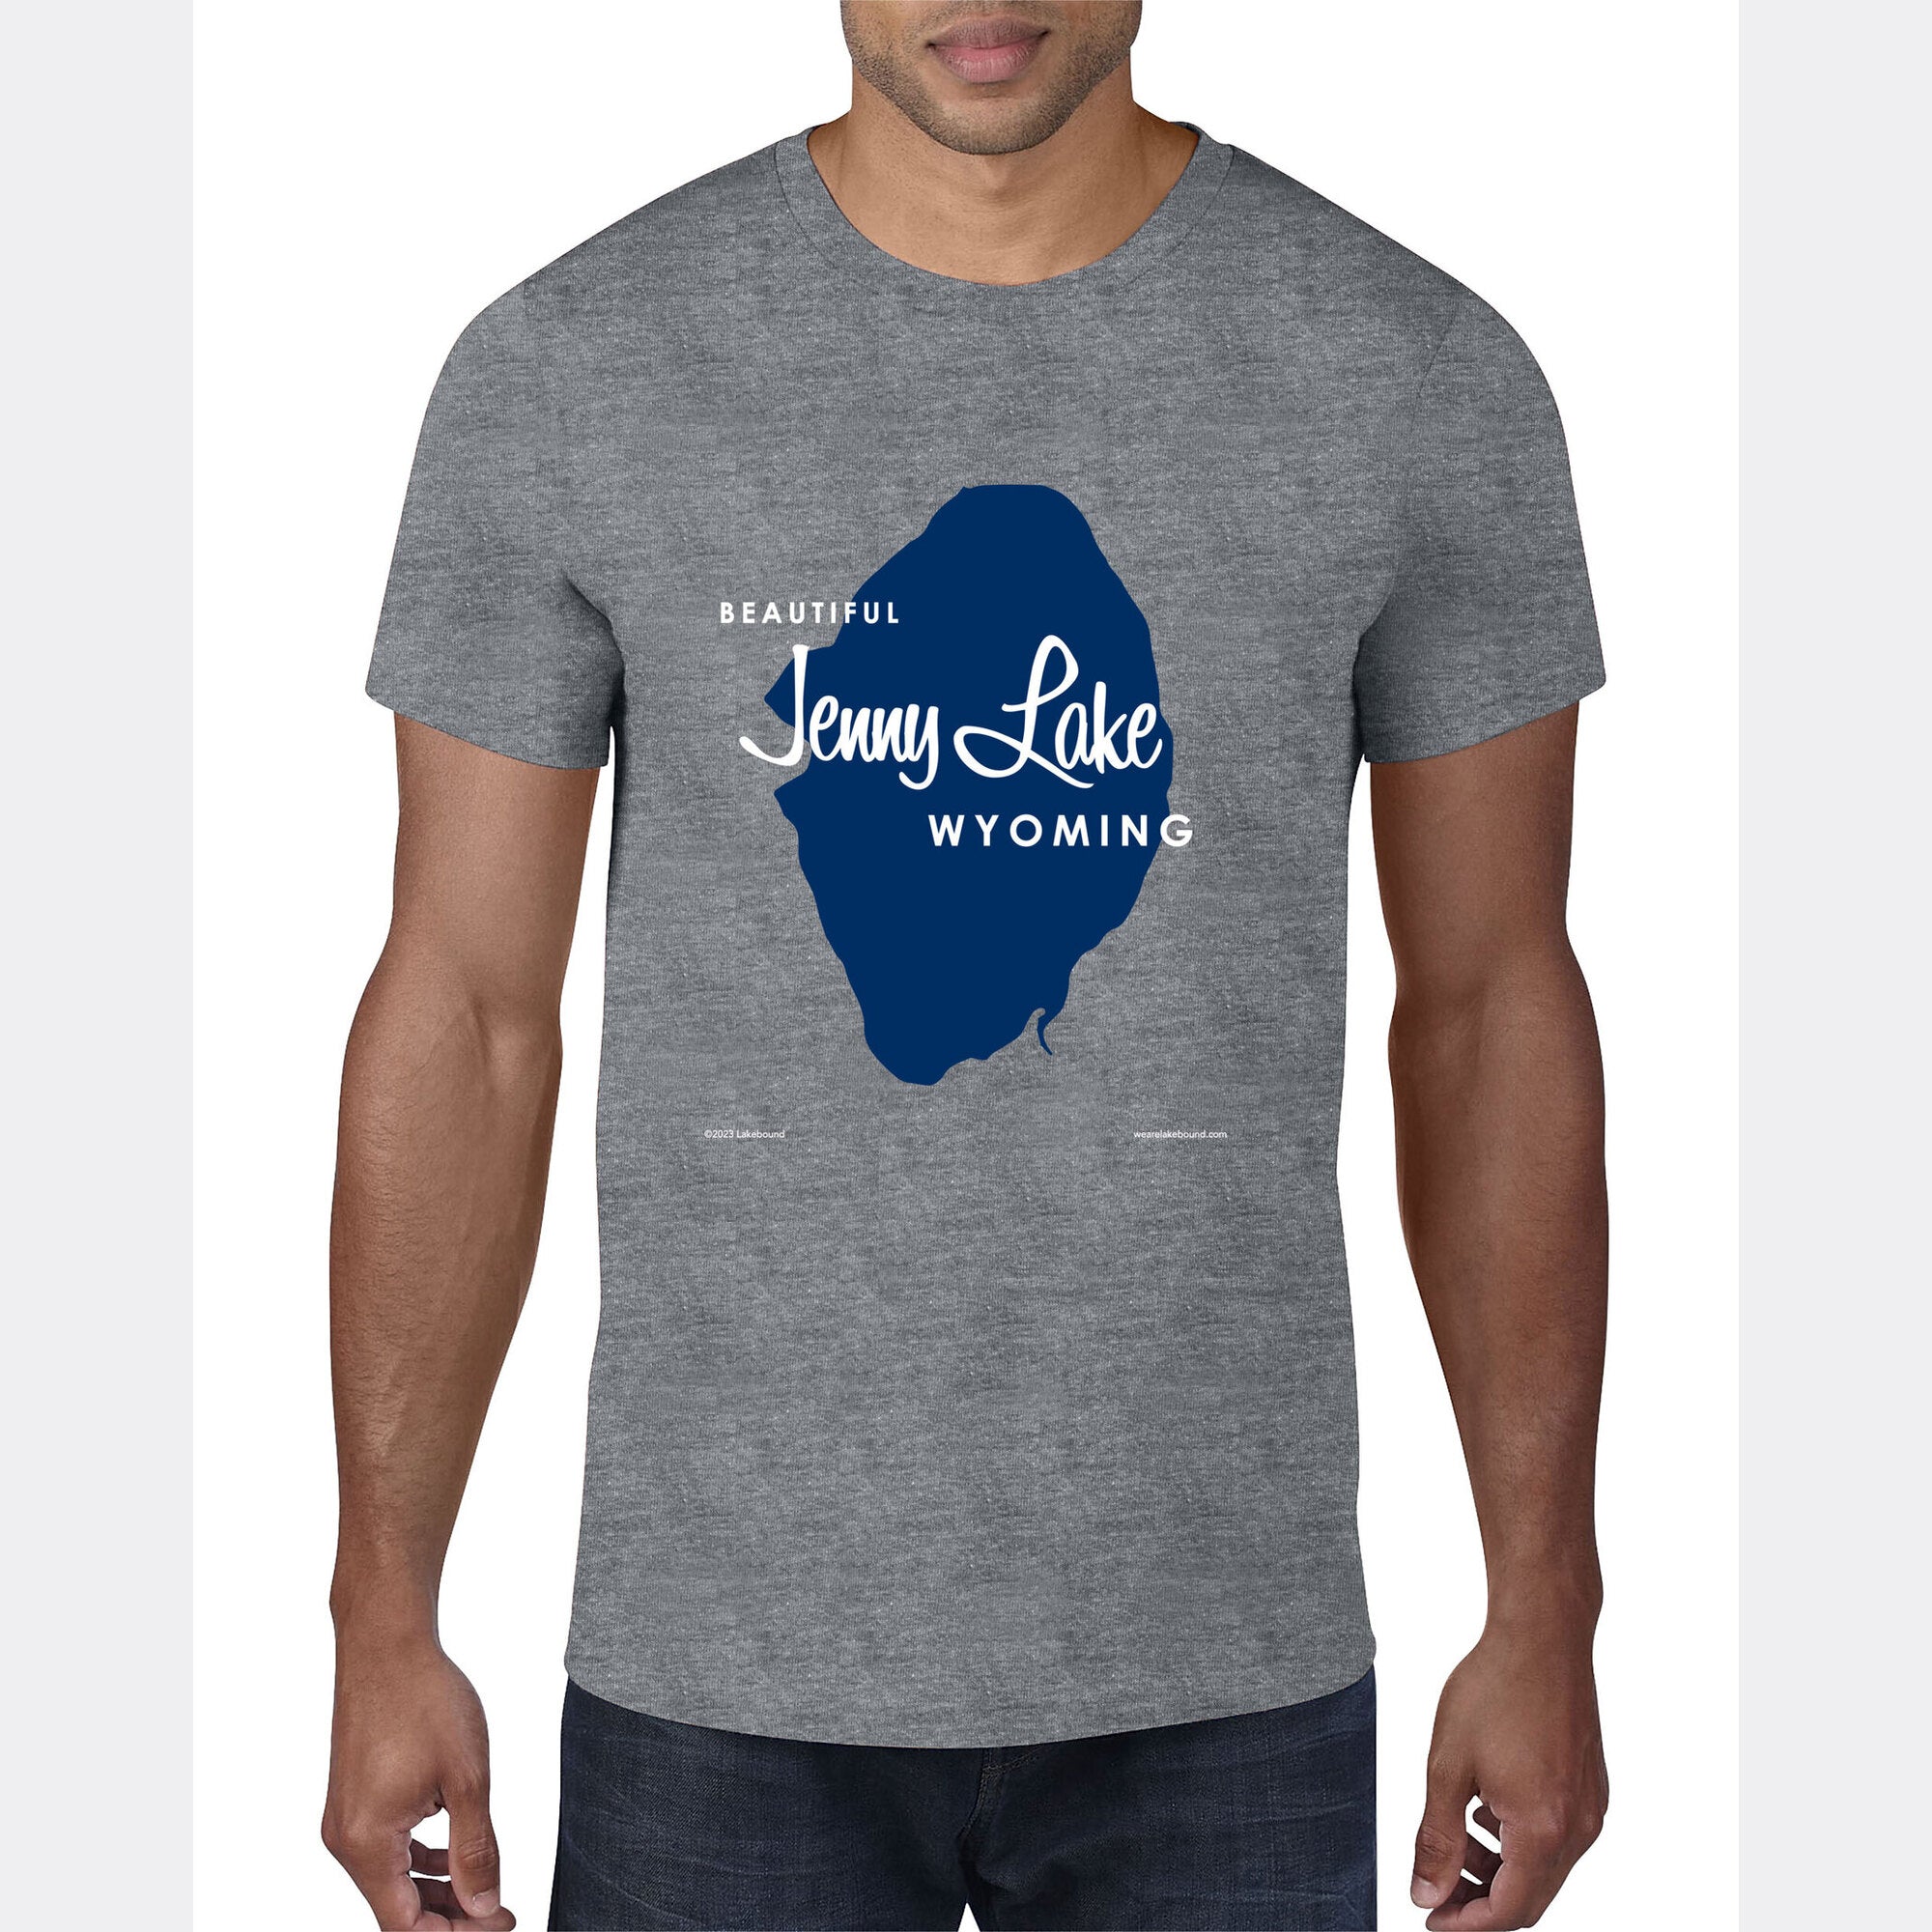 Jenny Lake Wyoming, T-Shirt